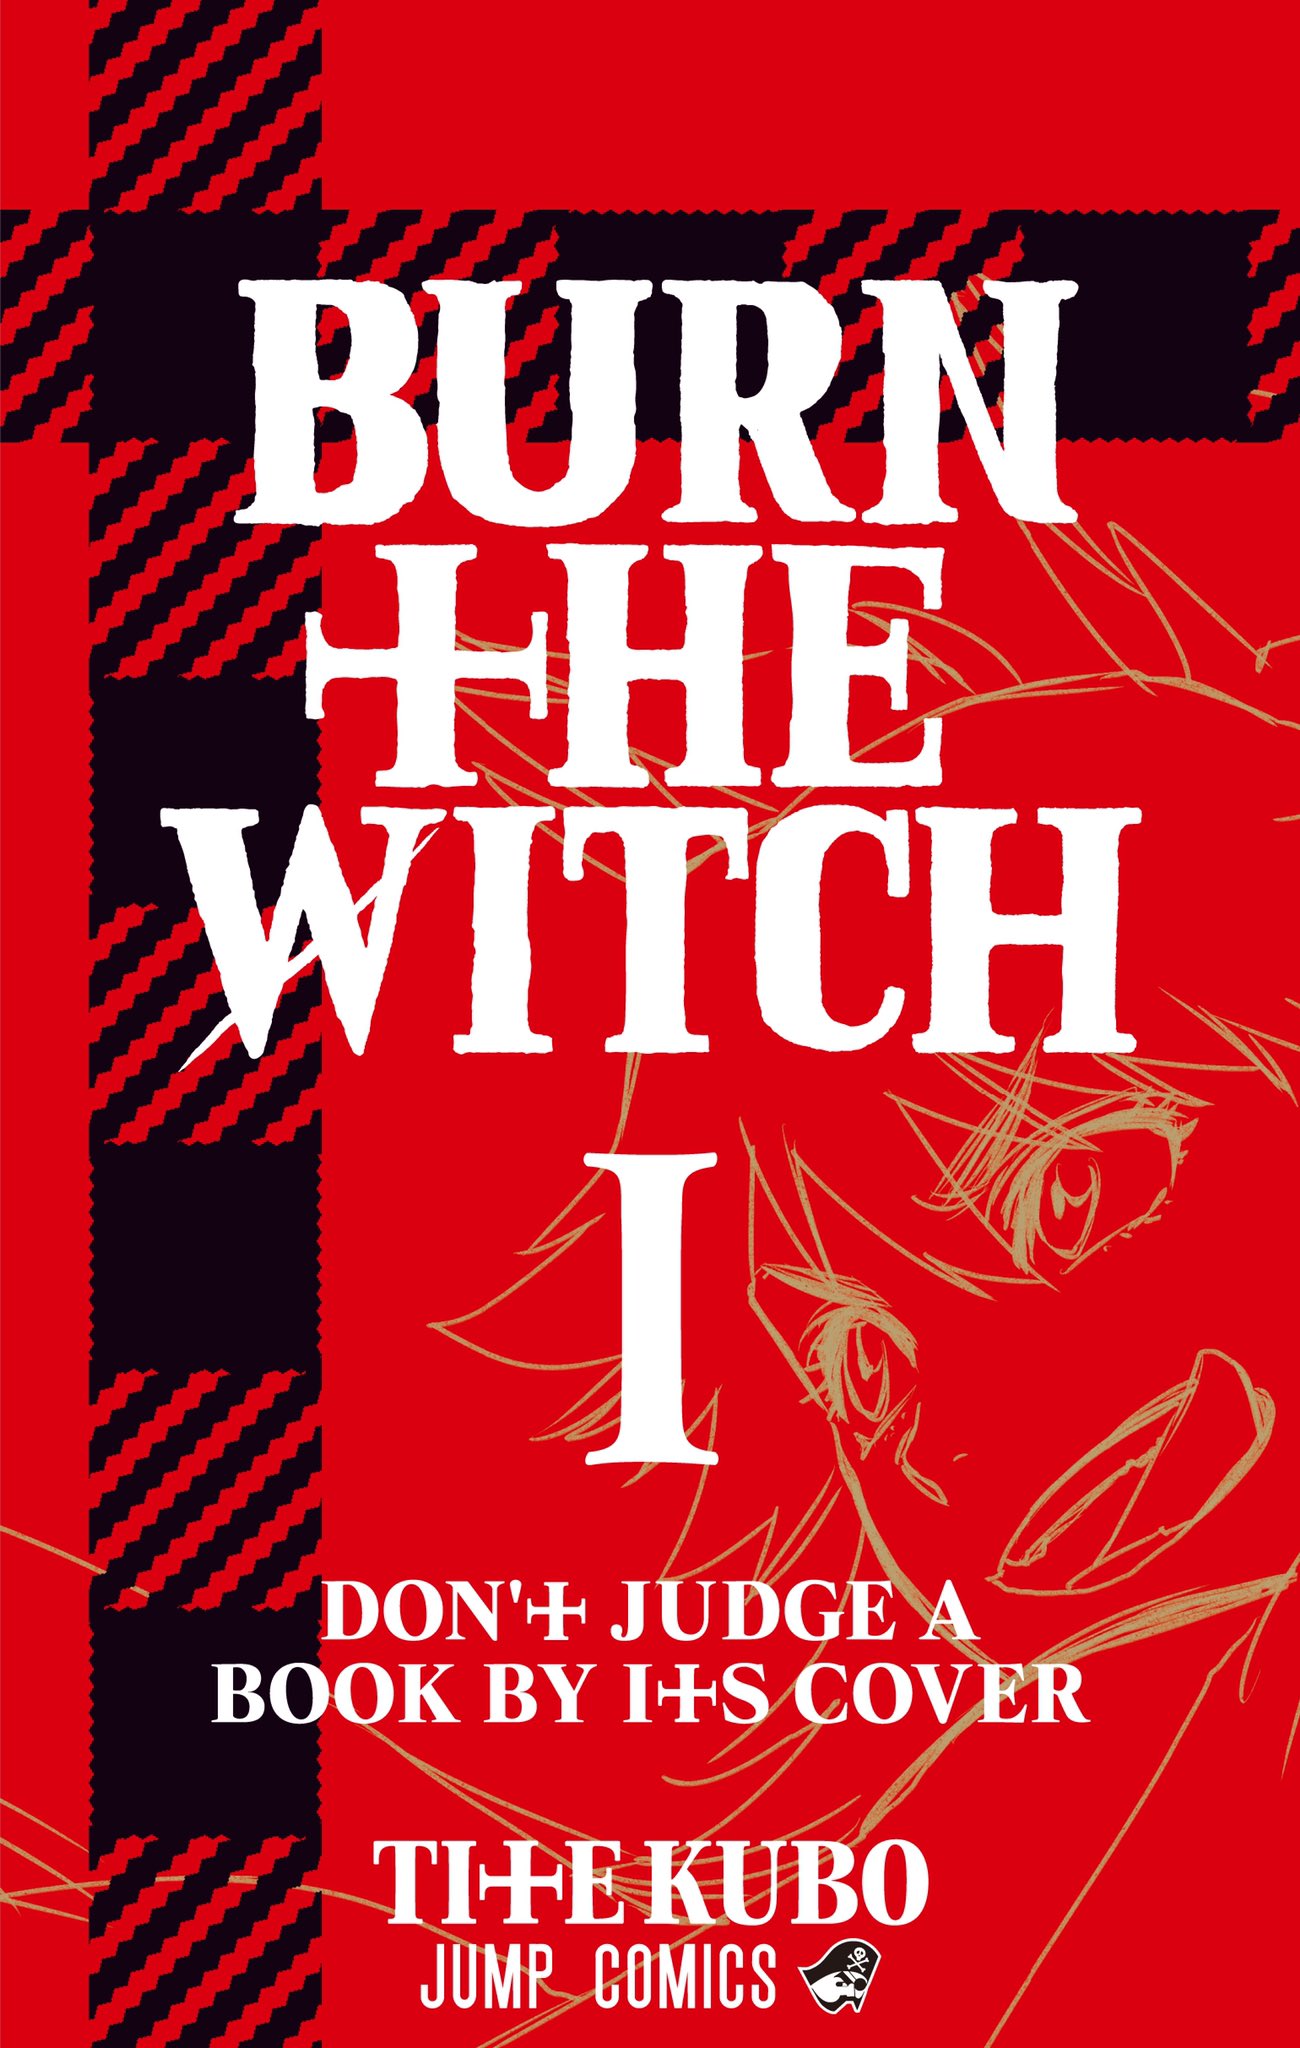 久保帯人「BURN THE WITCH」最新刊1巻 2020年10月2日発売!